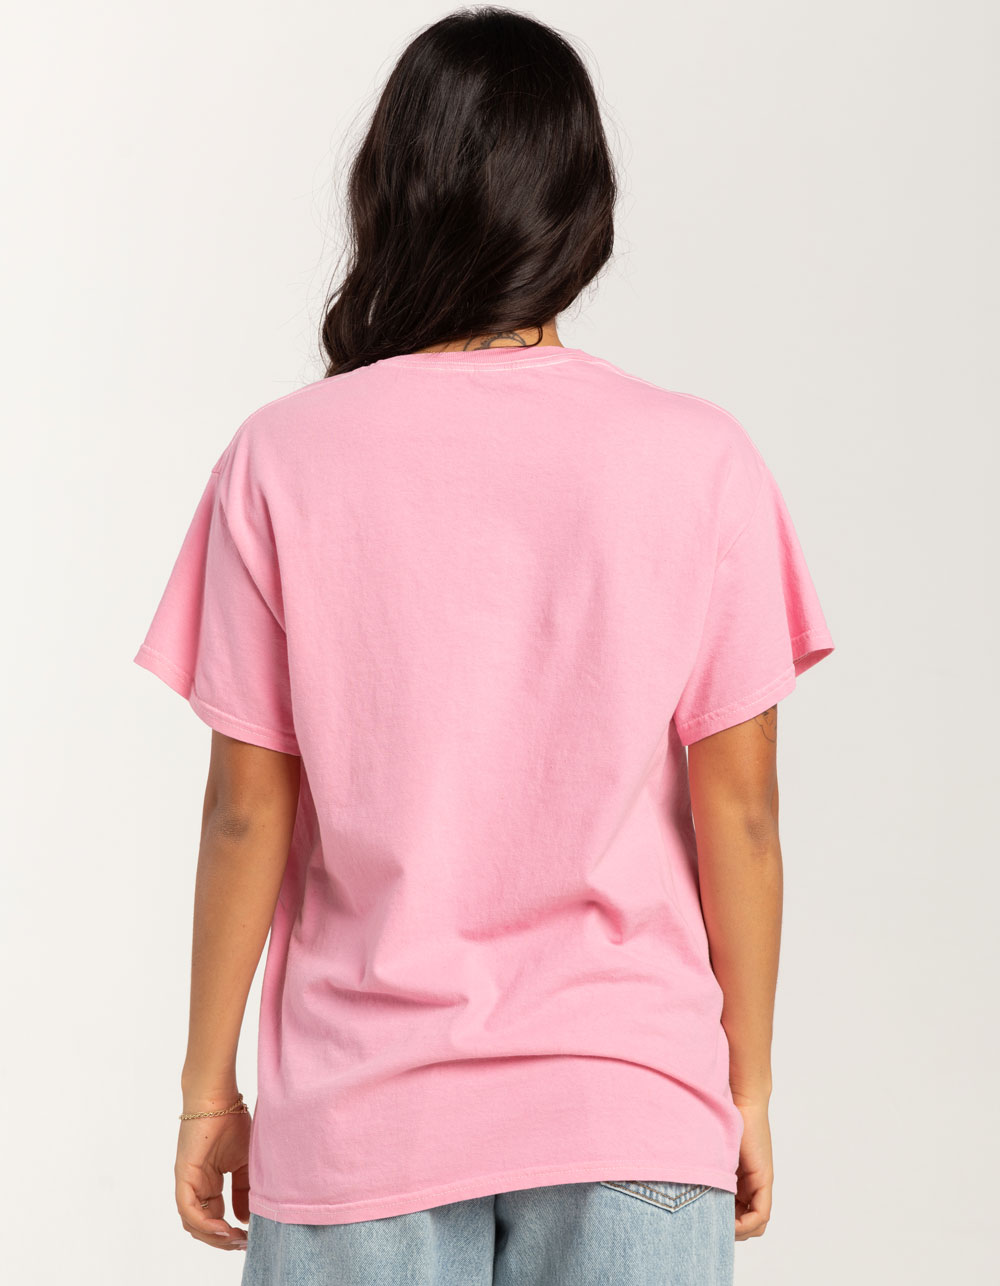 Hot Pink Oversized Boyfriend T Shirt, Tops